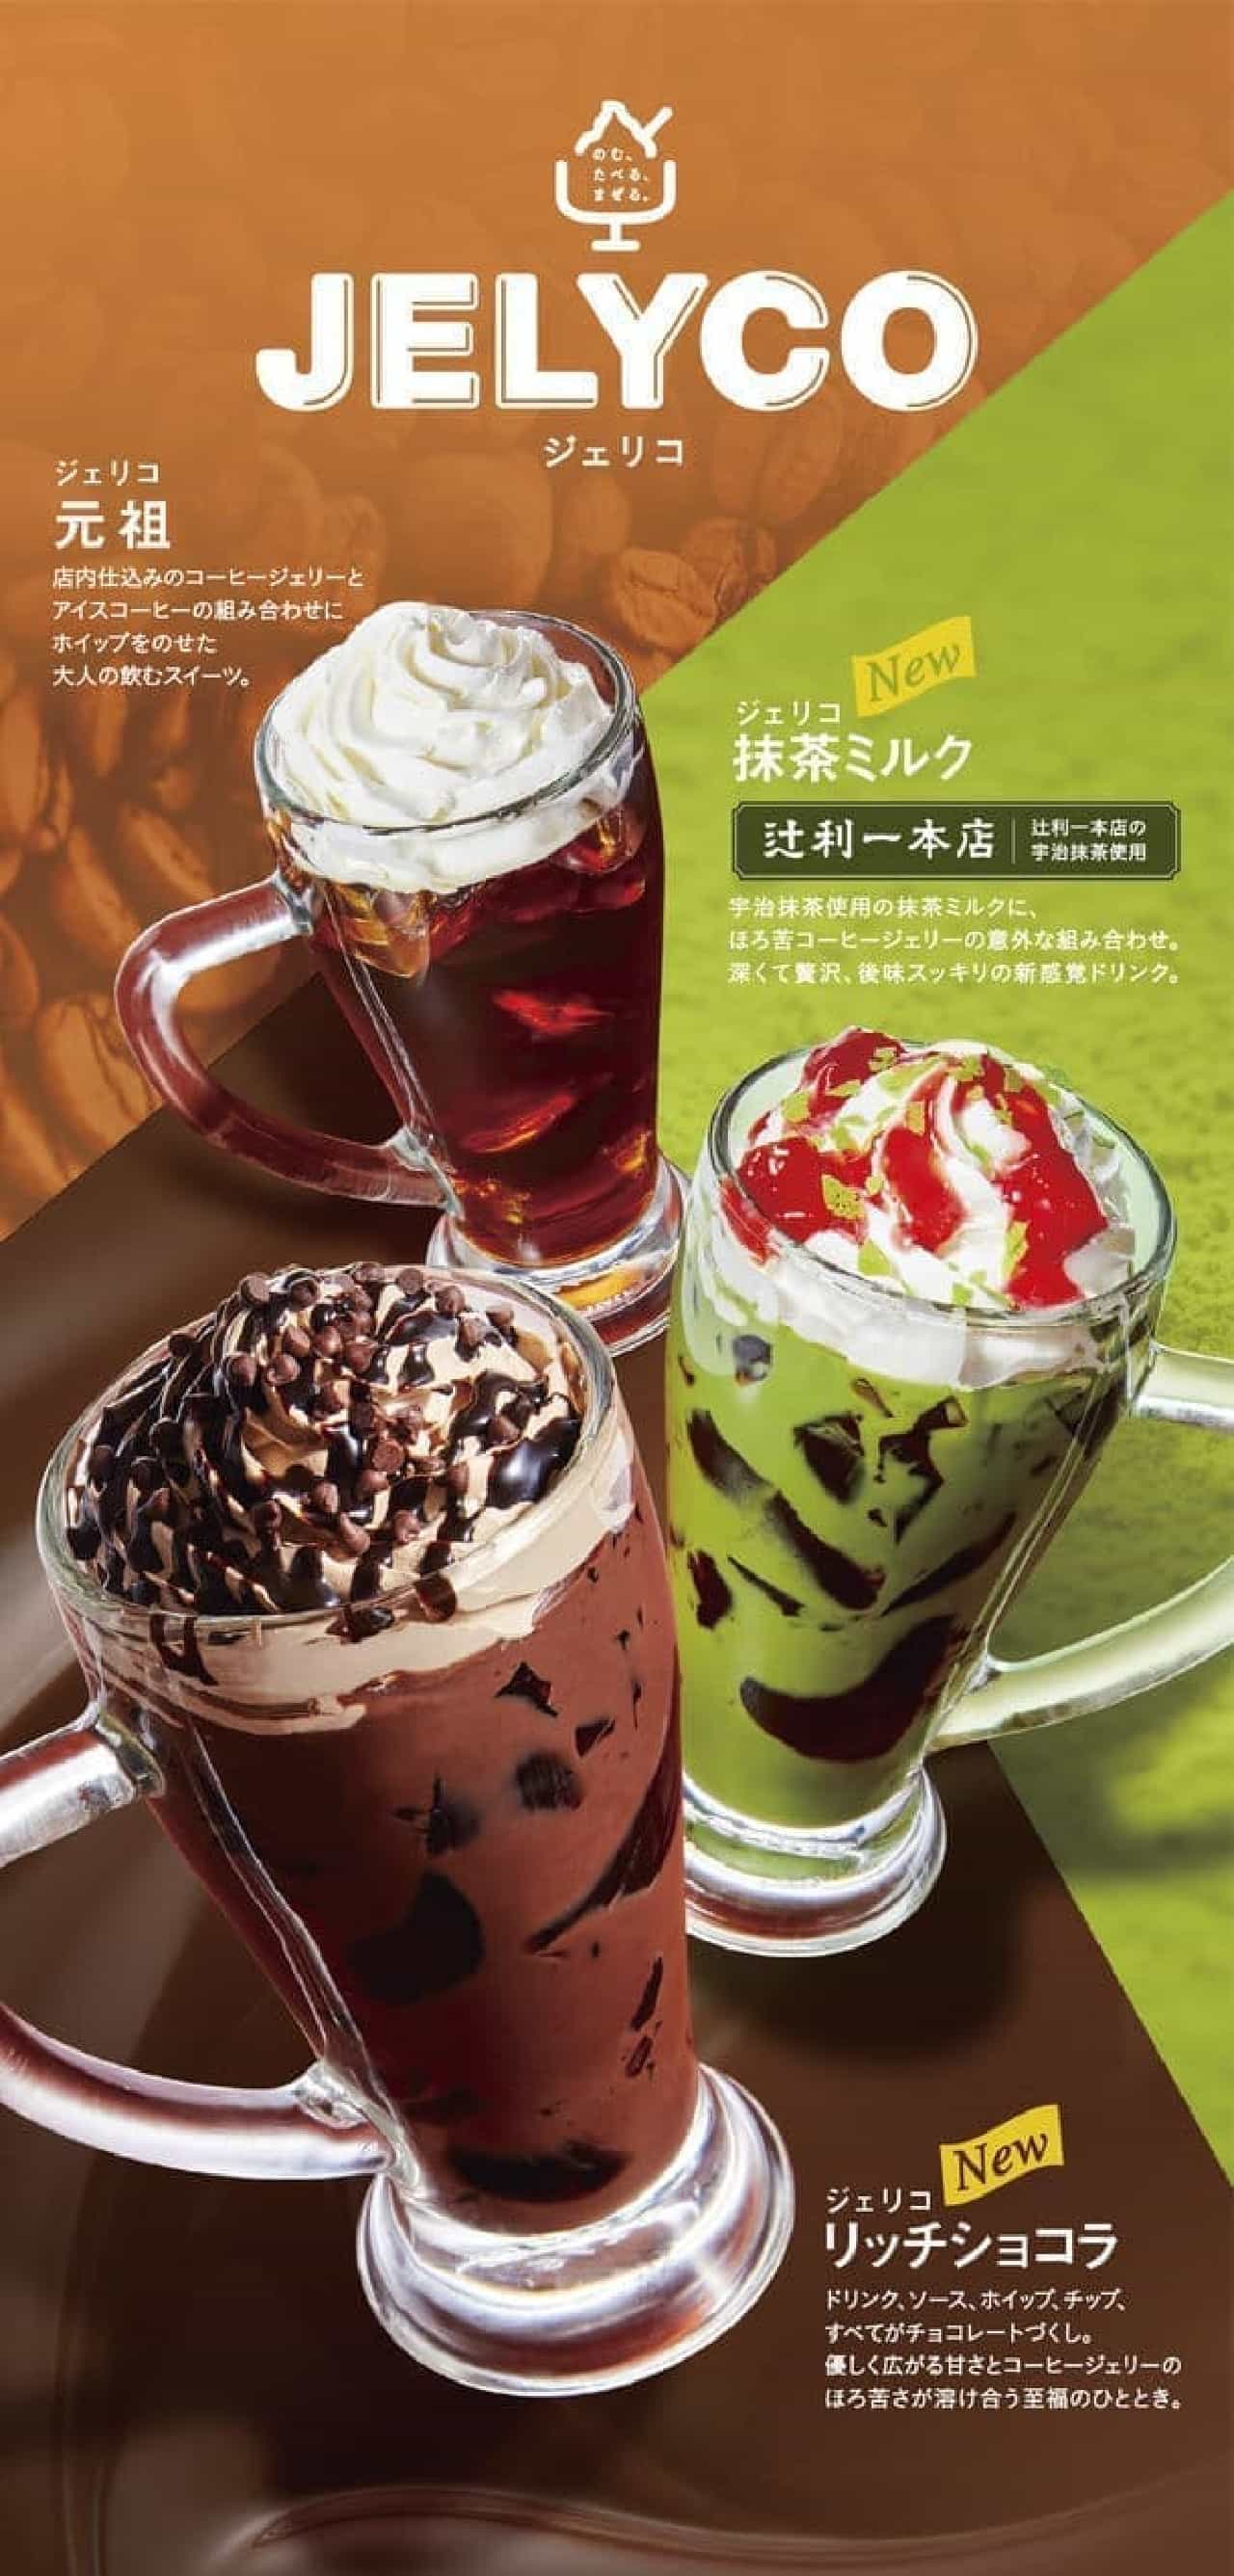 Komeda Coffee Shop "Jericho Matcha Milk" "Jericho Rich Chocolat"